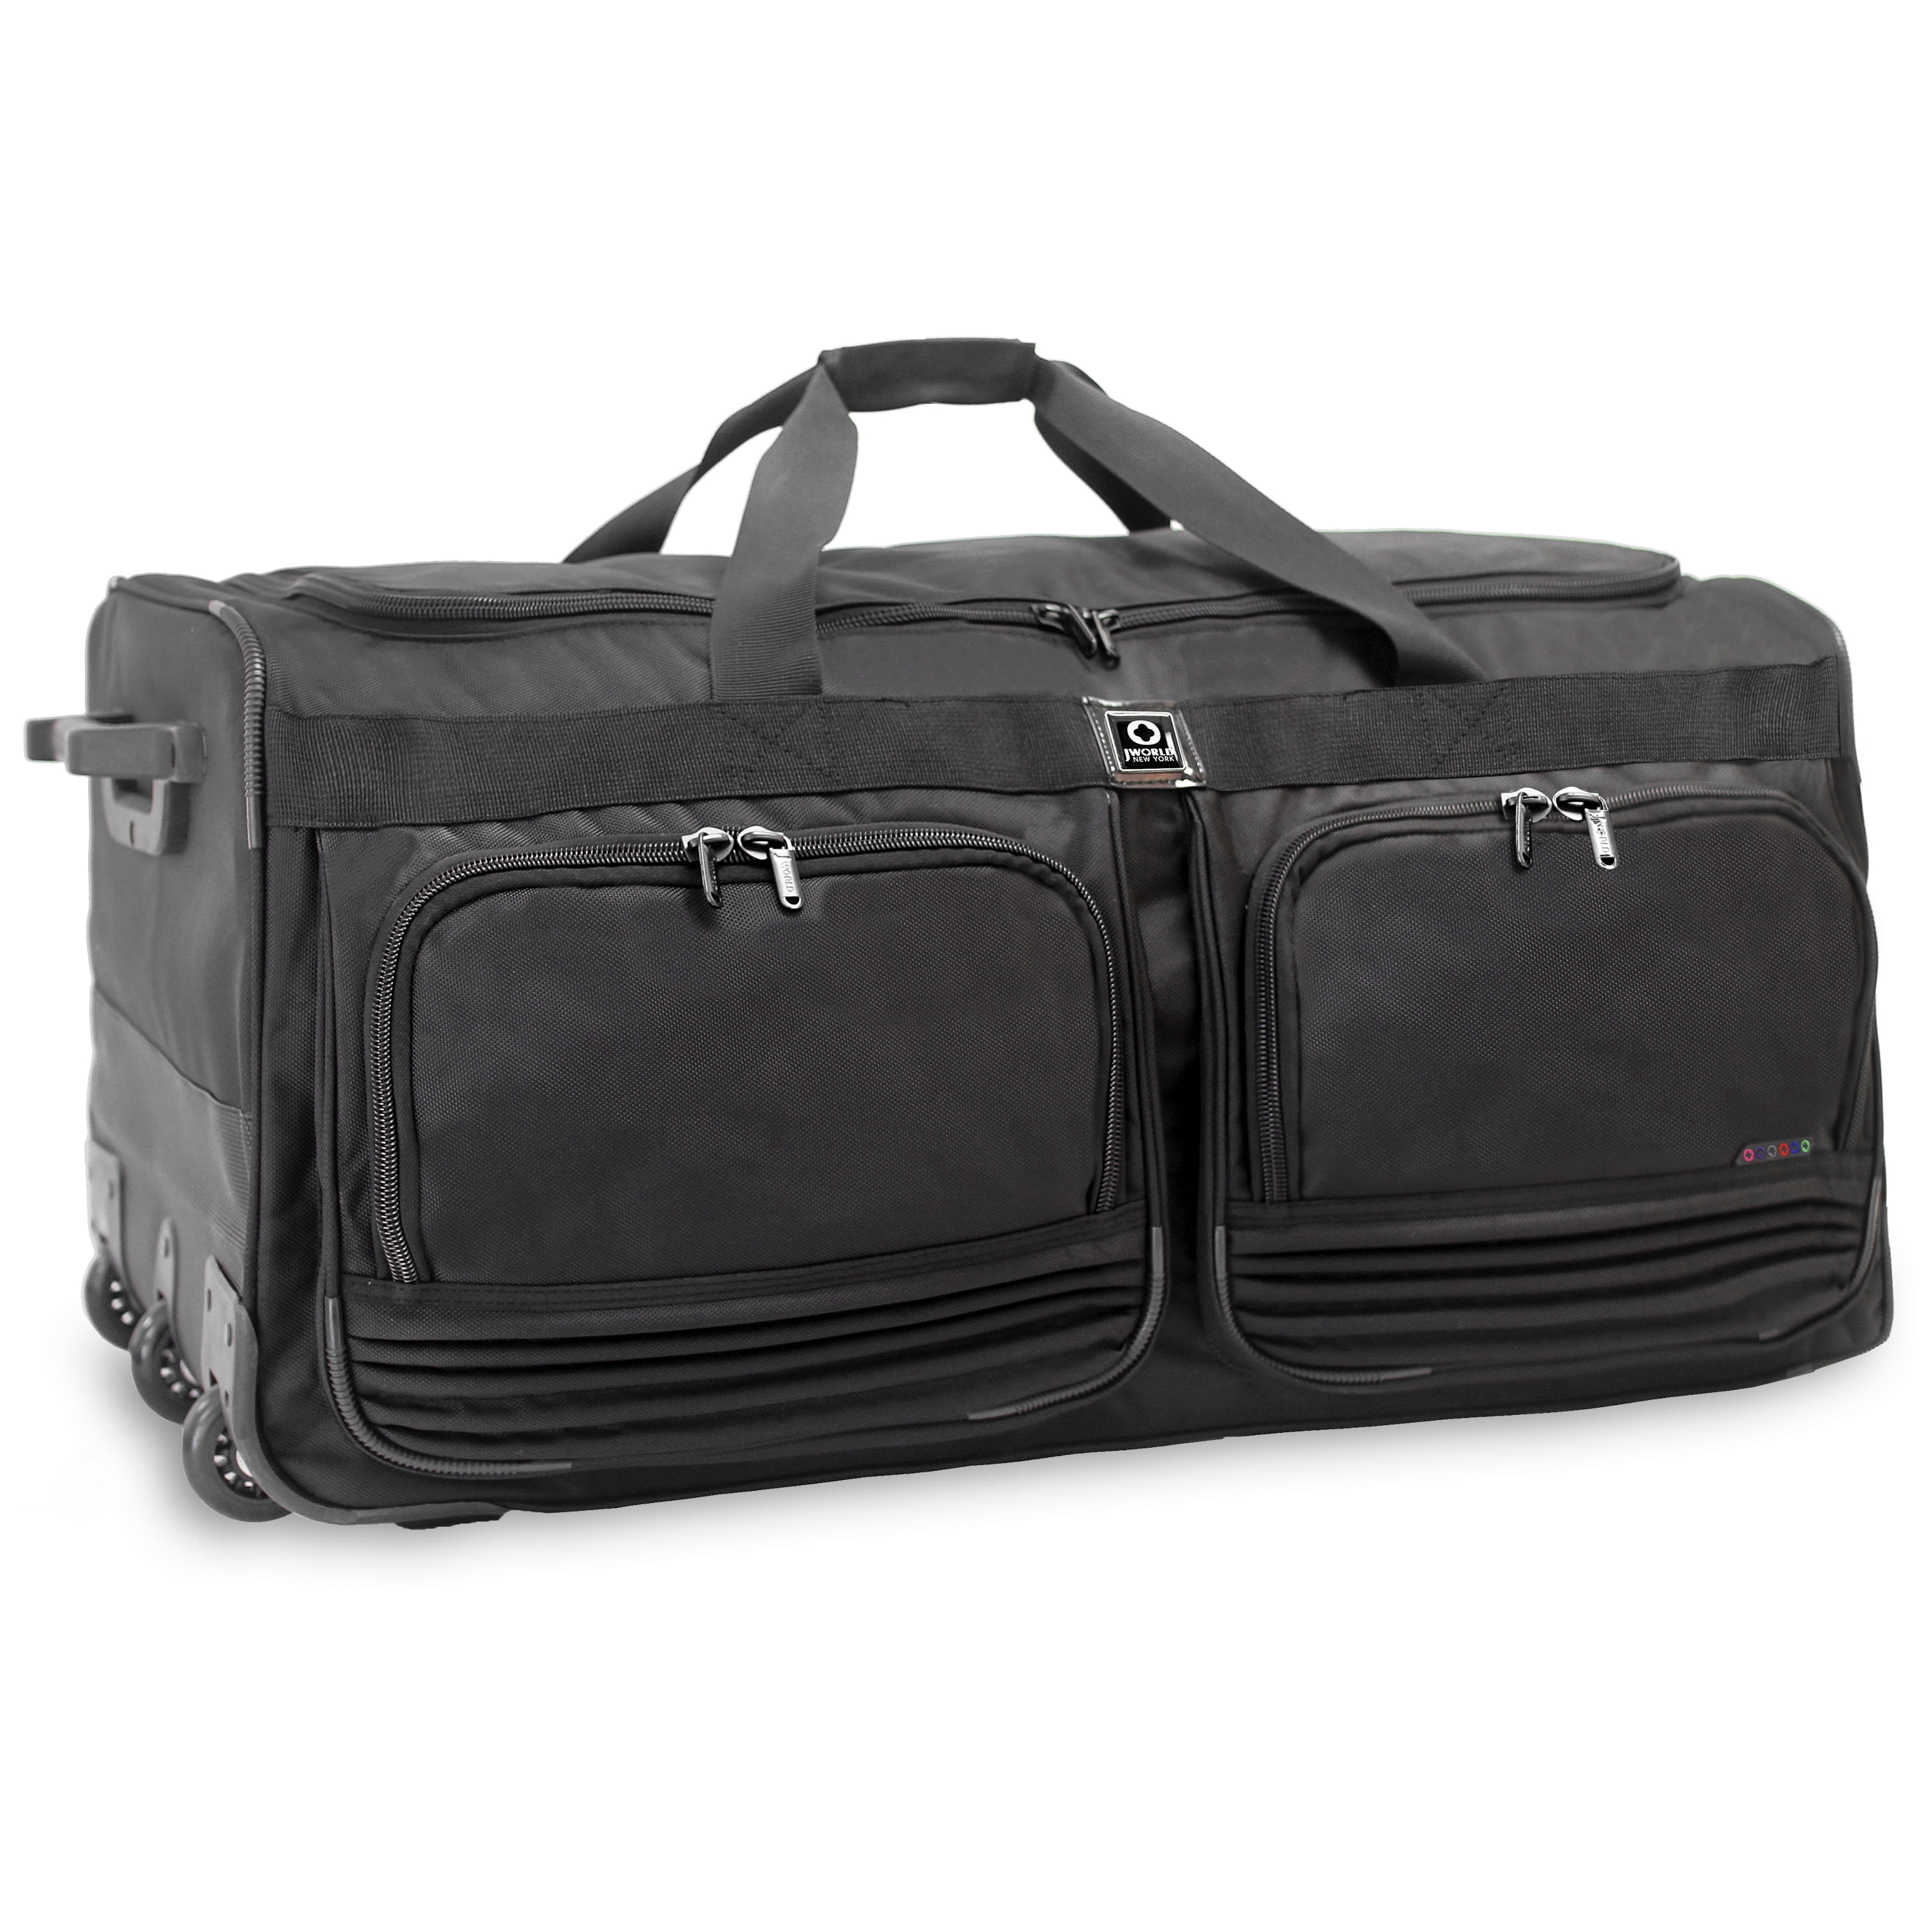 Louis Vuitton Unisex Adult Duffle Bags for sale